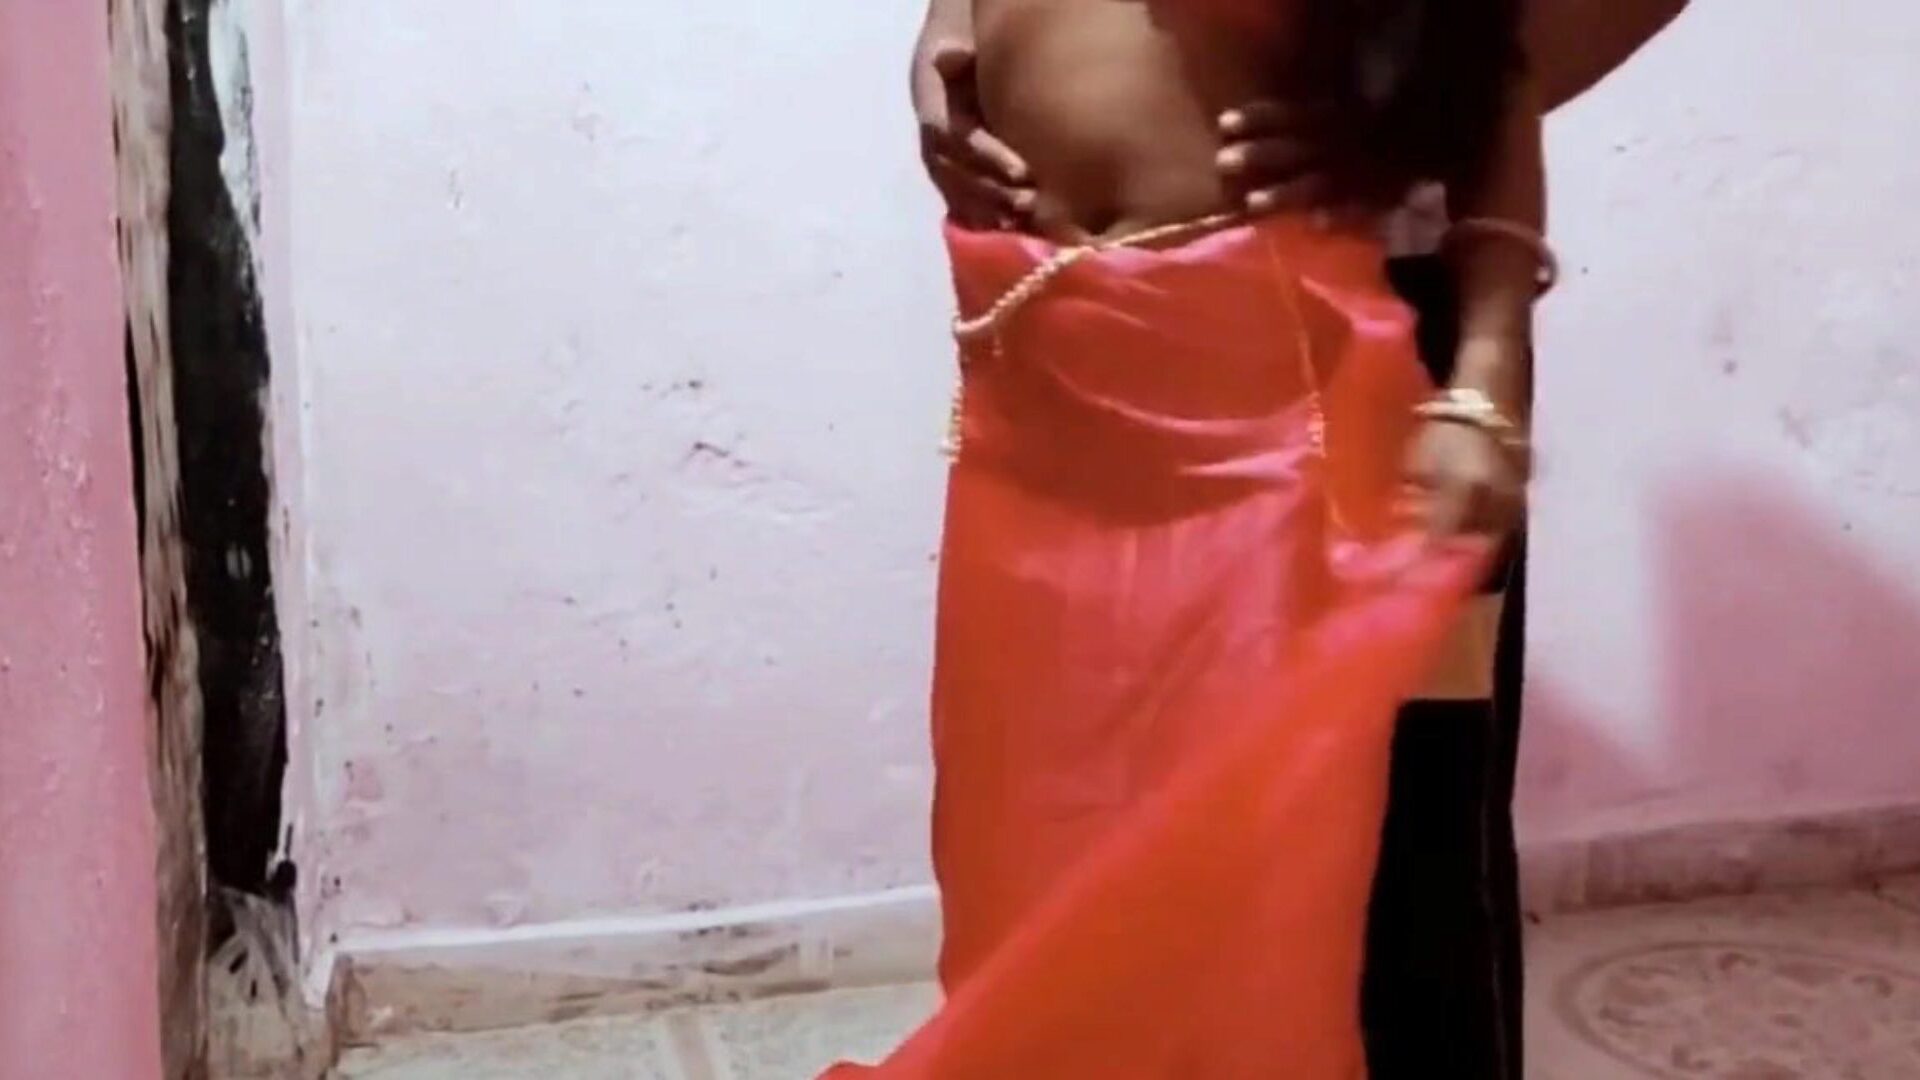 alex ne bhabhi ko choda room fun s muževima: besplatna porno b9 gledaj alex ne bhabhi ko choda room zabava s muževima filmska scena na xhamster - konačna arhiva besplatnih za sve šrilančanke azijske hd xxx pornografske cijevi filmske scene